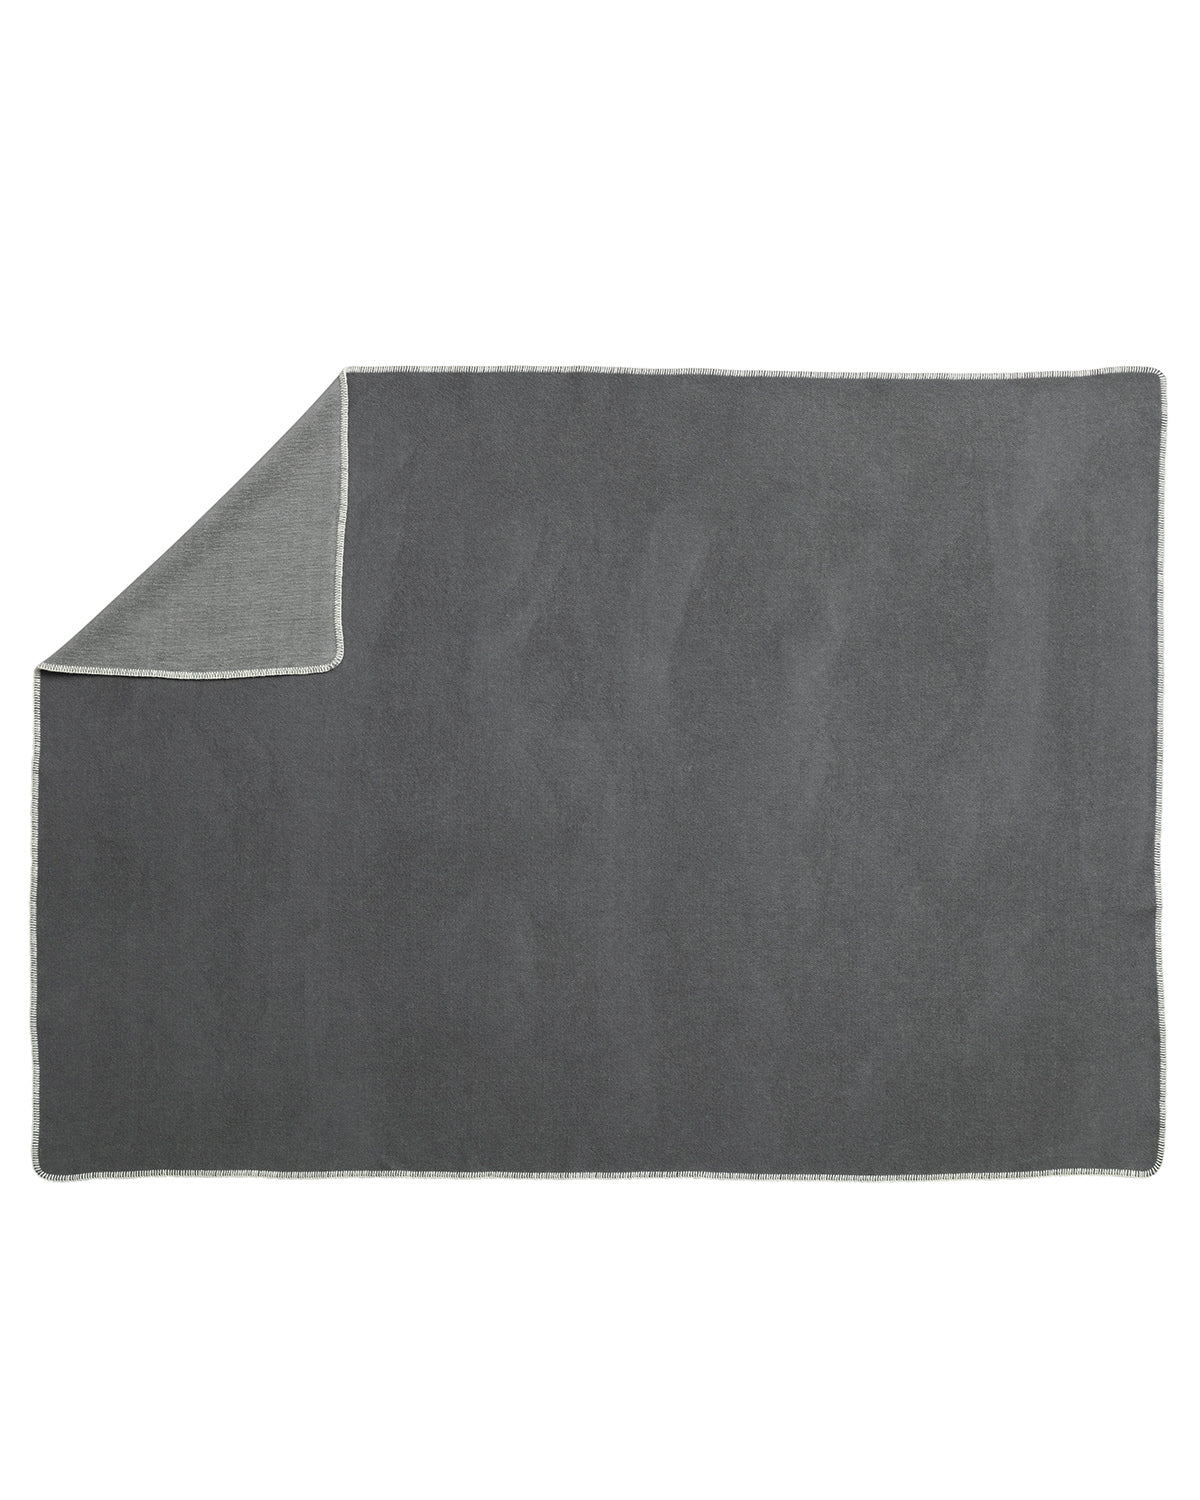 PappelinaBlanket YLVA Dark Grey/Charcoal  image 1